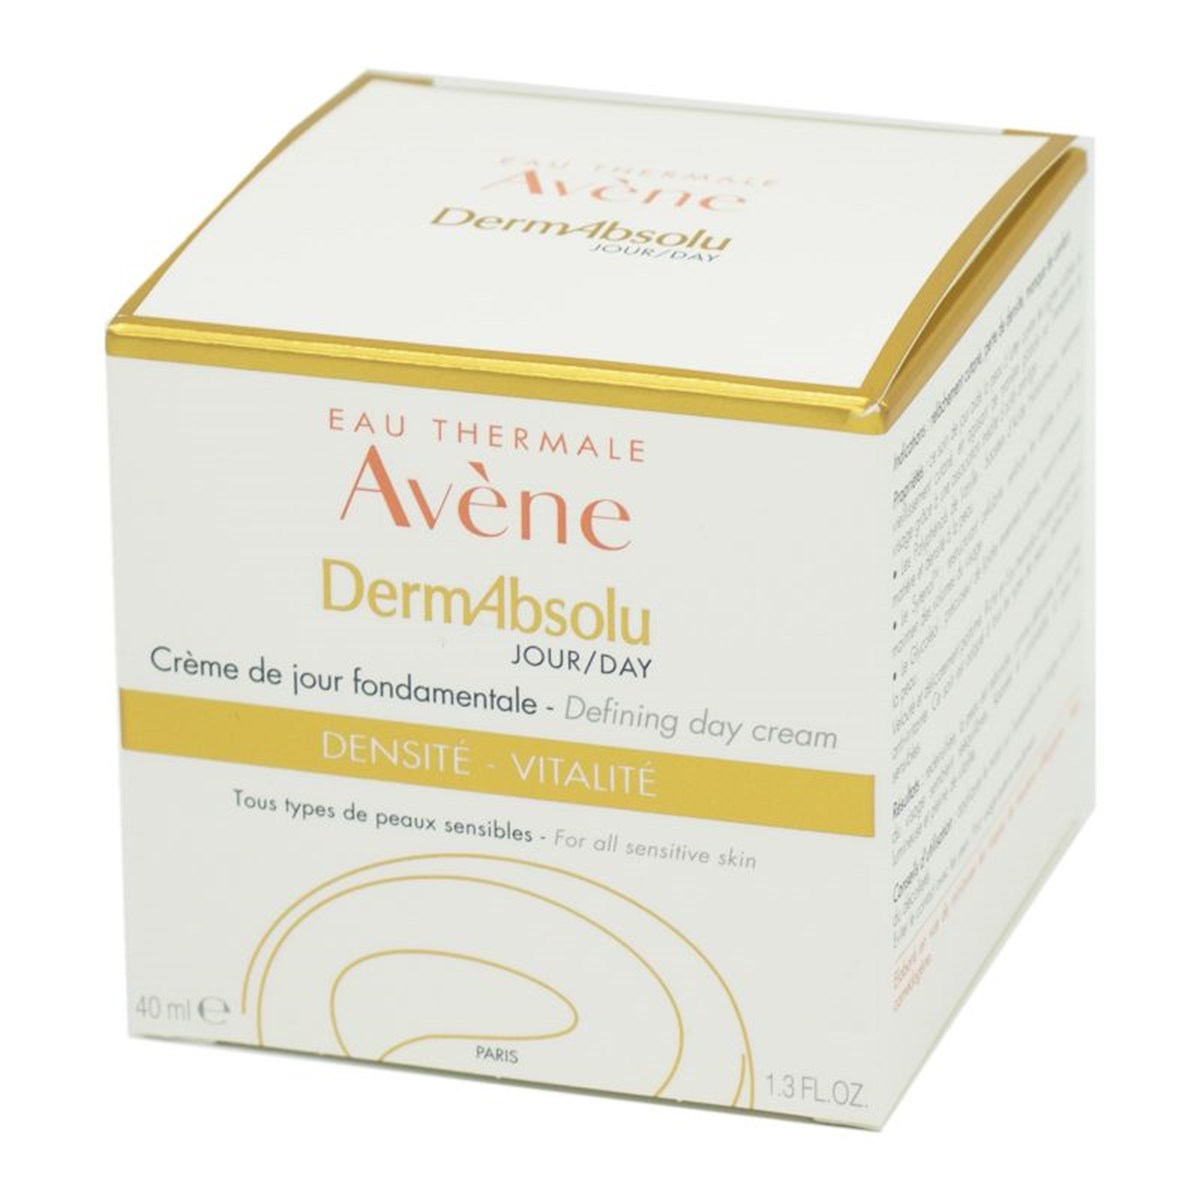 Avene DermAbsolu Defining Day Cream 40 ml-LeylekKapida.com